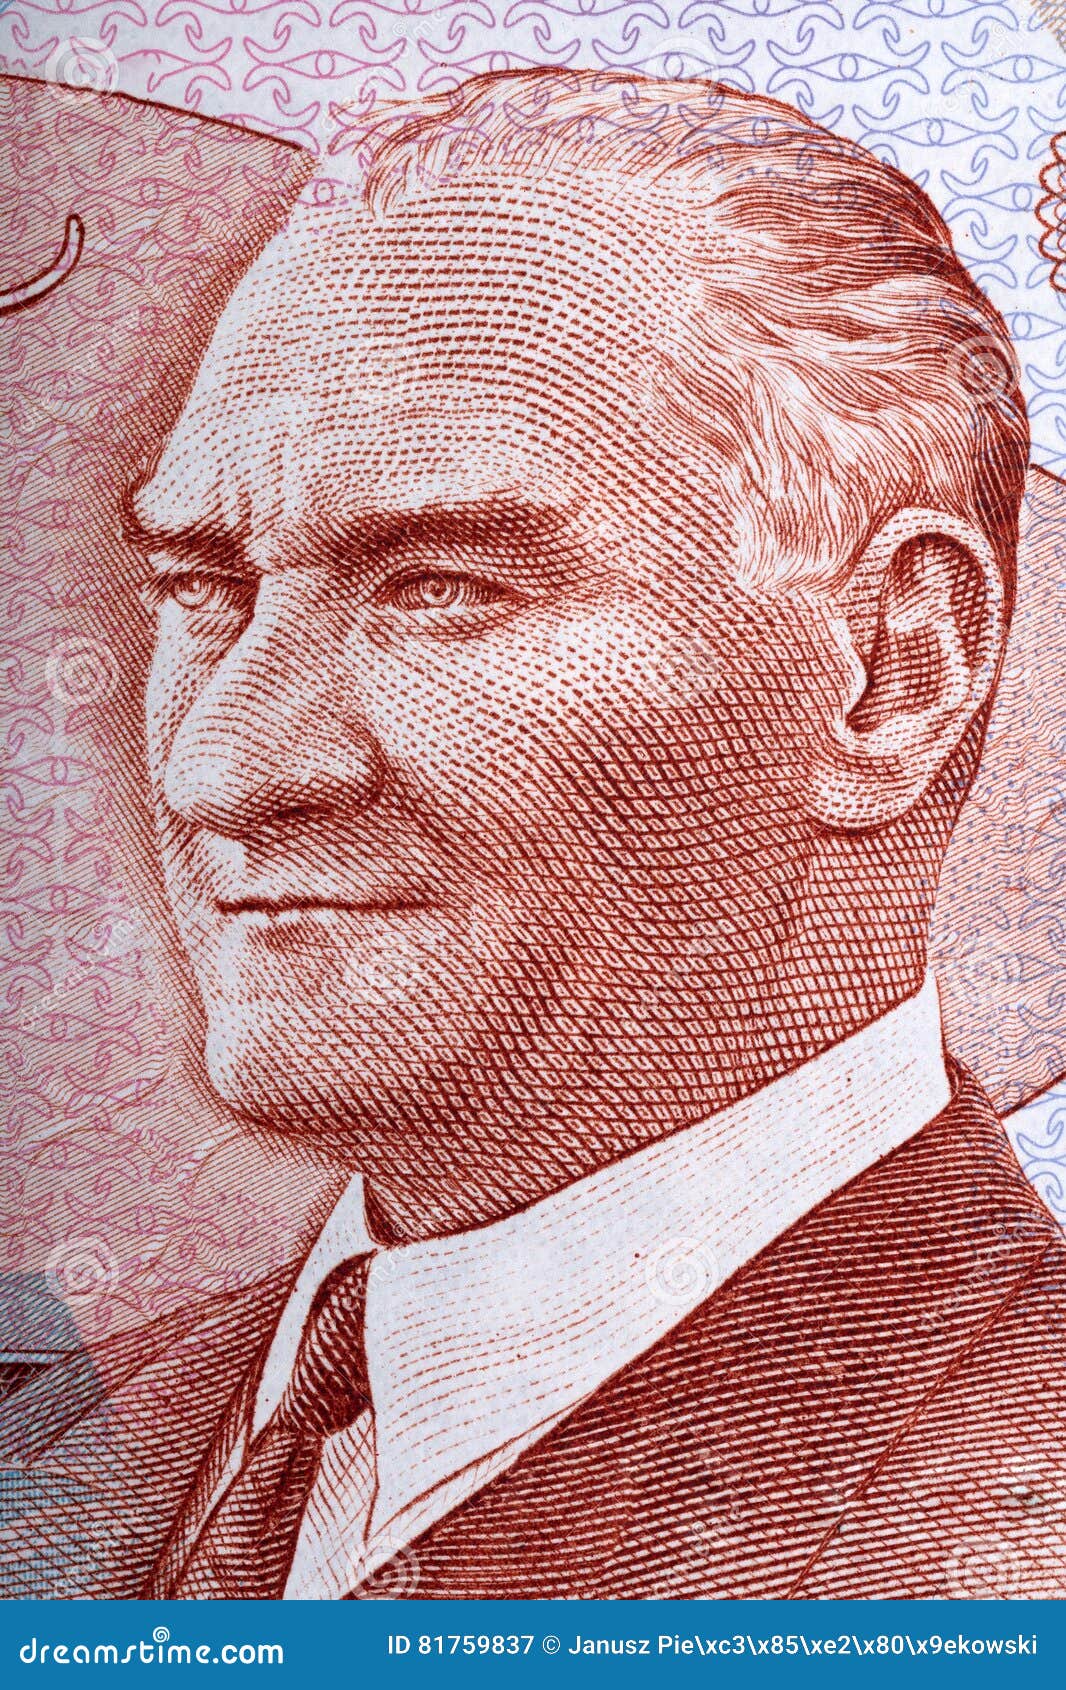 mustafa kemal ataturk portrait from turkish money